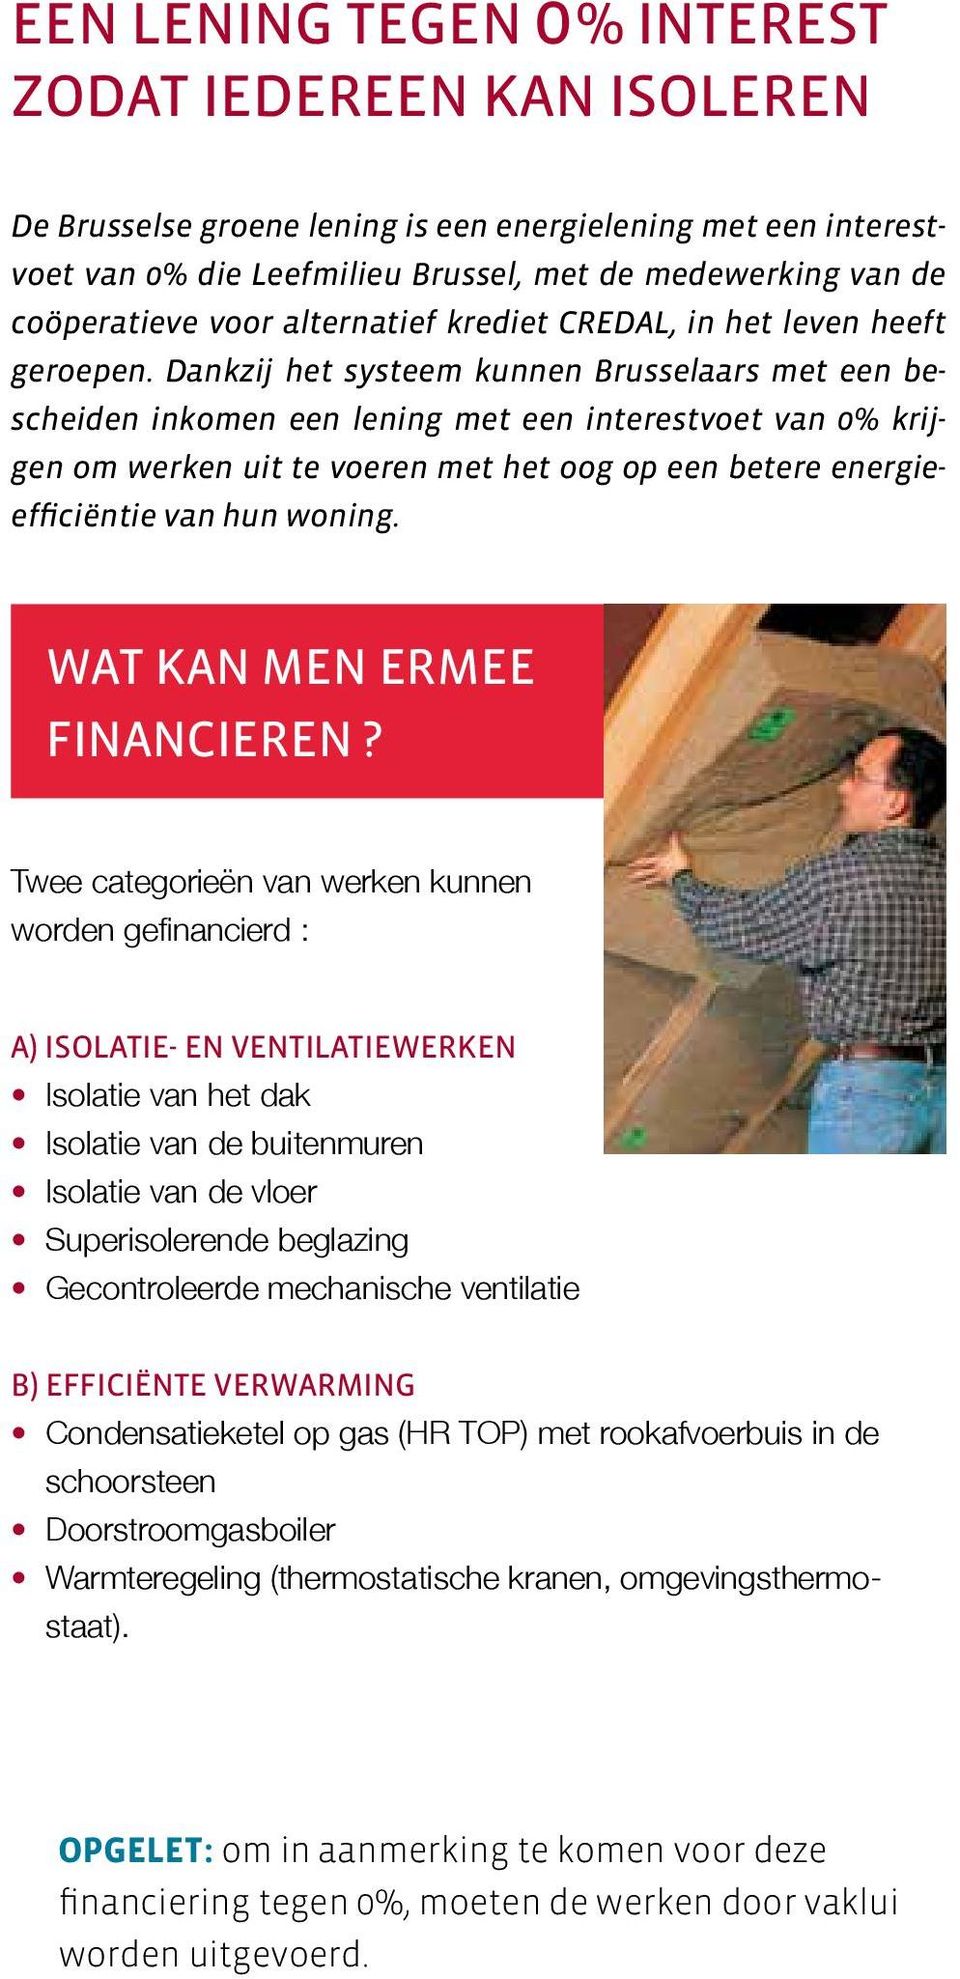 Dankzij het systeem kunnen Brusselaars met een bescheiden inkomen een lening met een interestvoet van 0% krijgen om werken uit te voeren met het oog op een betere energieefficiëntie van hun woning.